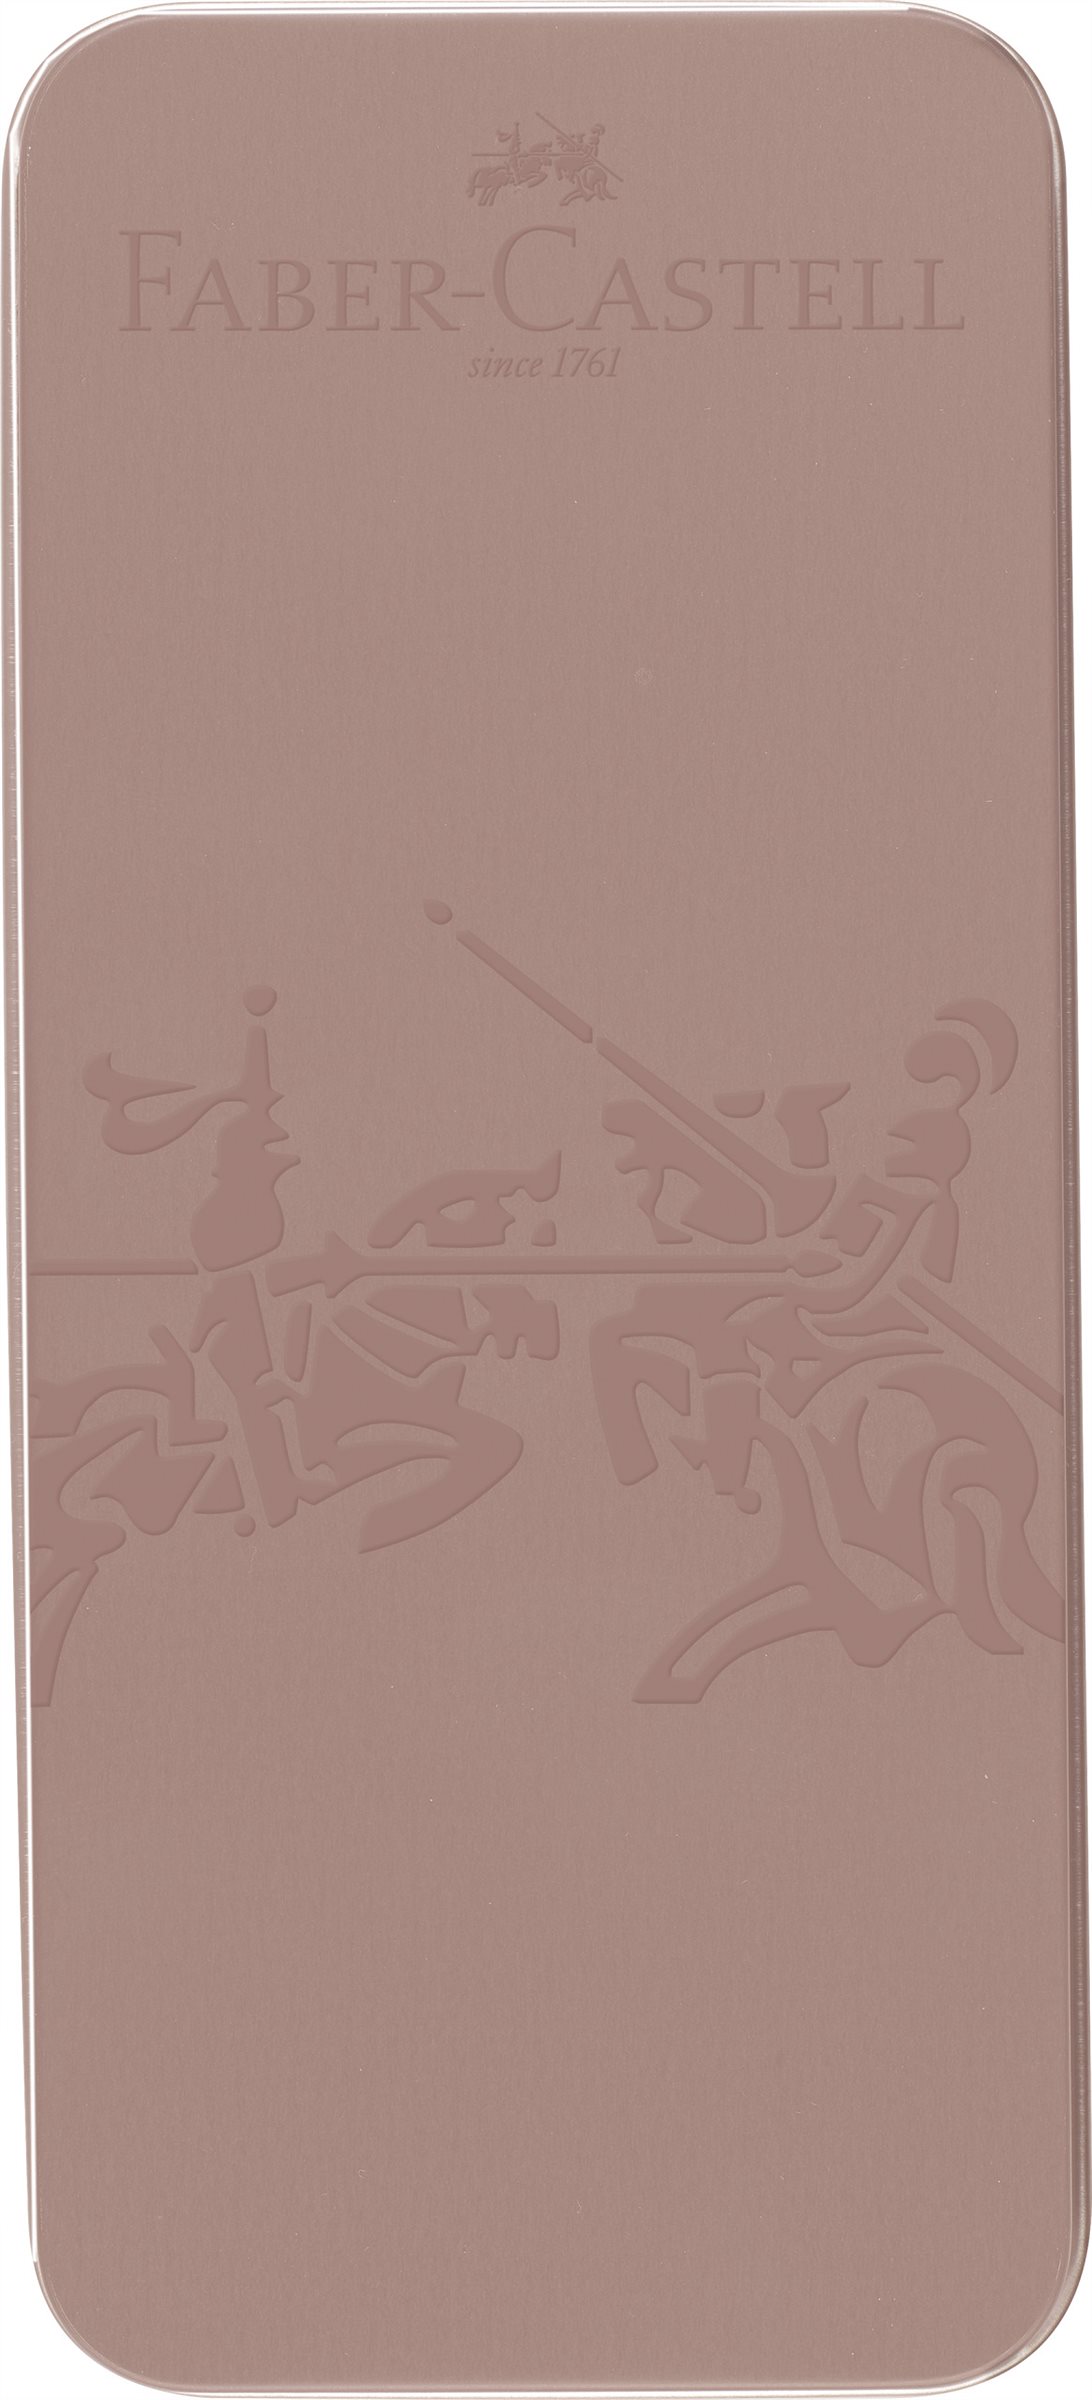 Faber Castell_Grip Geschenkset Rosekupfer_EUR 35